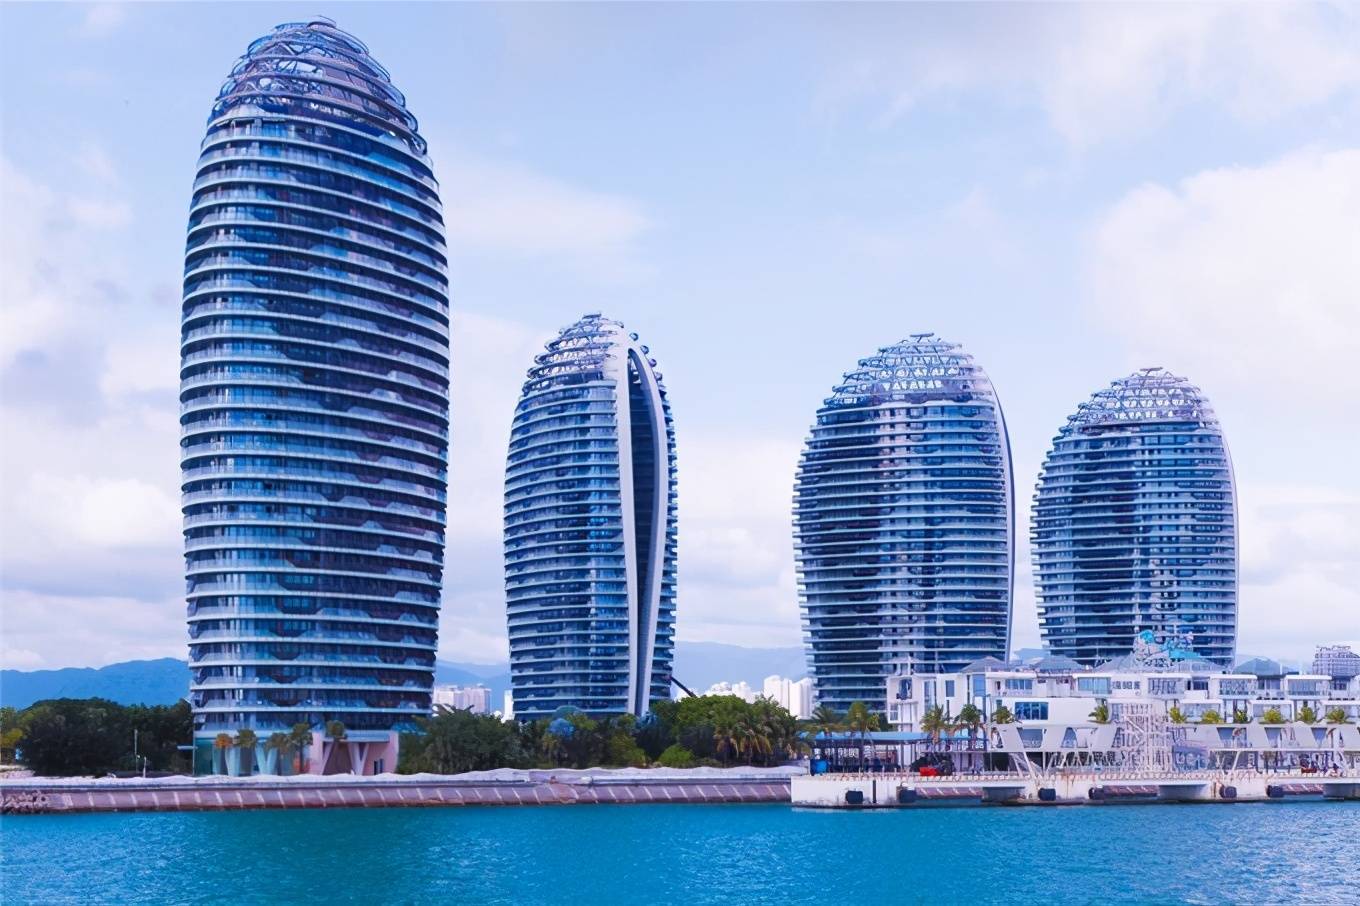 三亚 湾 最有标志性的建筑物,是凤凰岛上5栋度假酒店大楼.